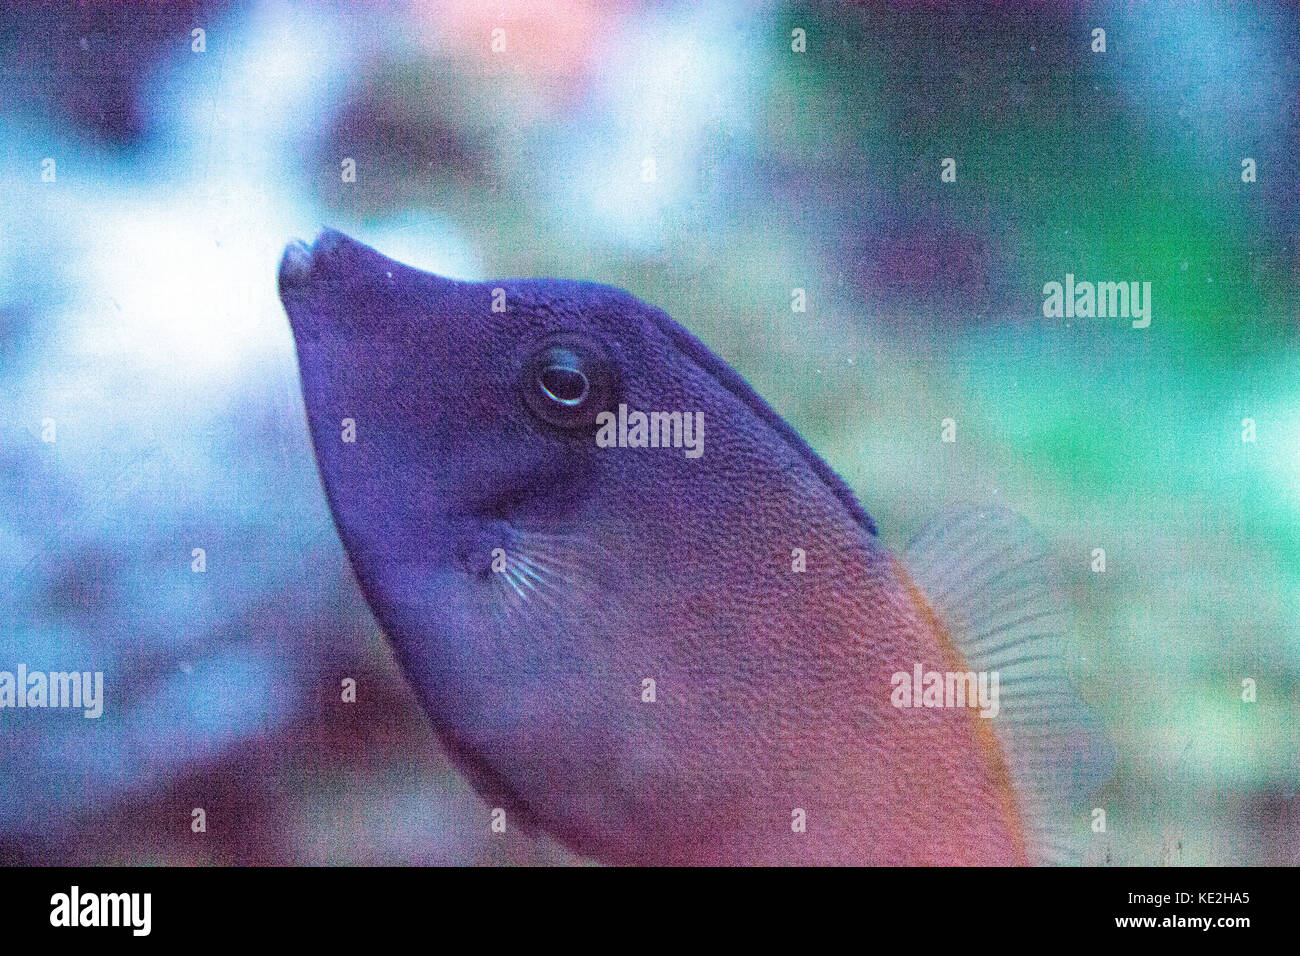 Orangetail filefish Pervagor aspricaudus swims above a coral reef in a marine aquarium Stock Photo